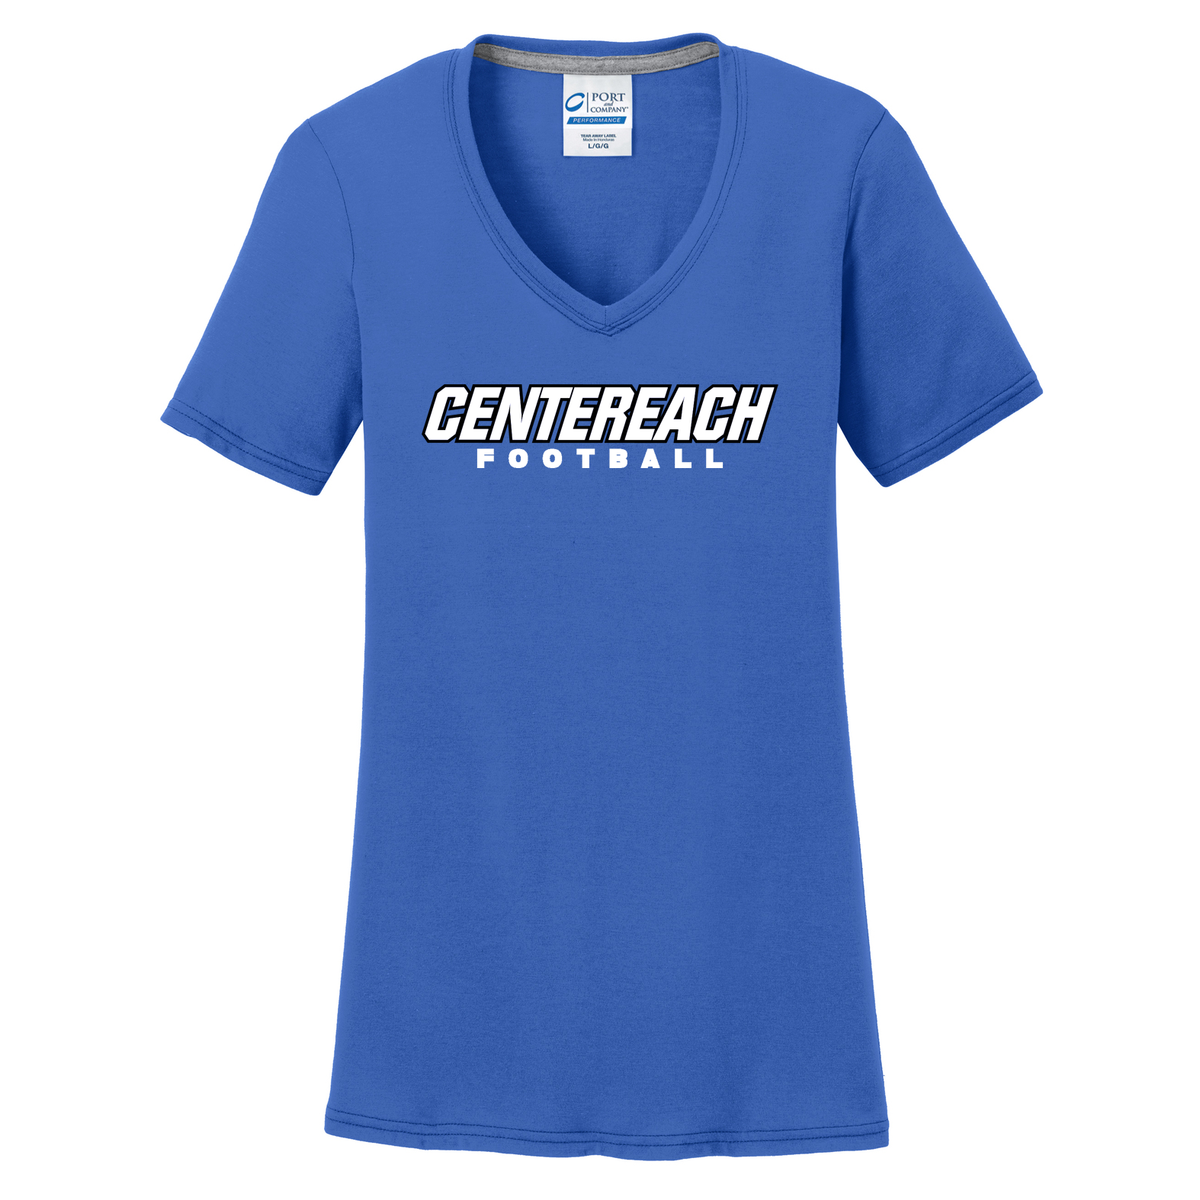 Centereach Football Women's T-Shirt